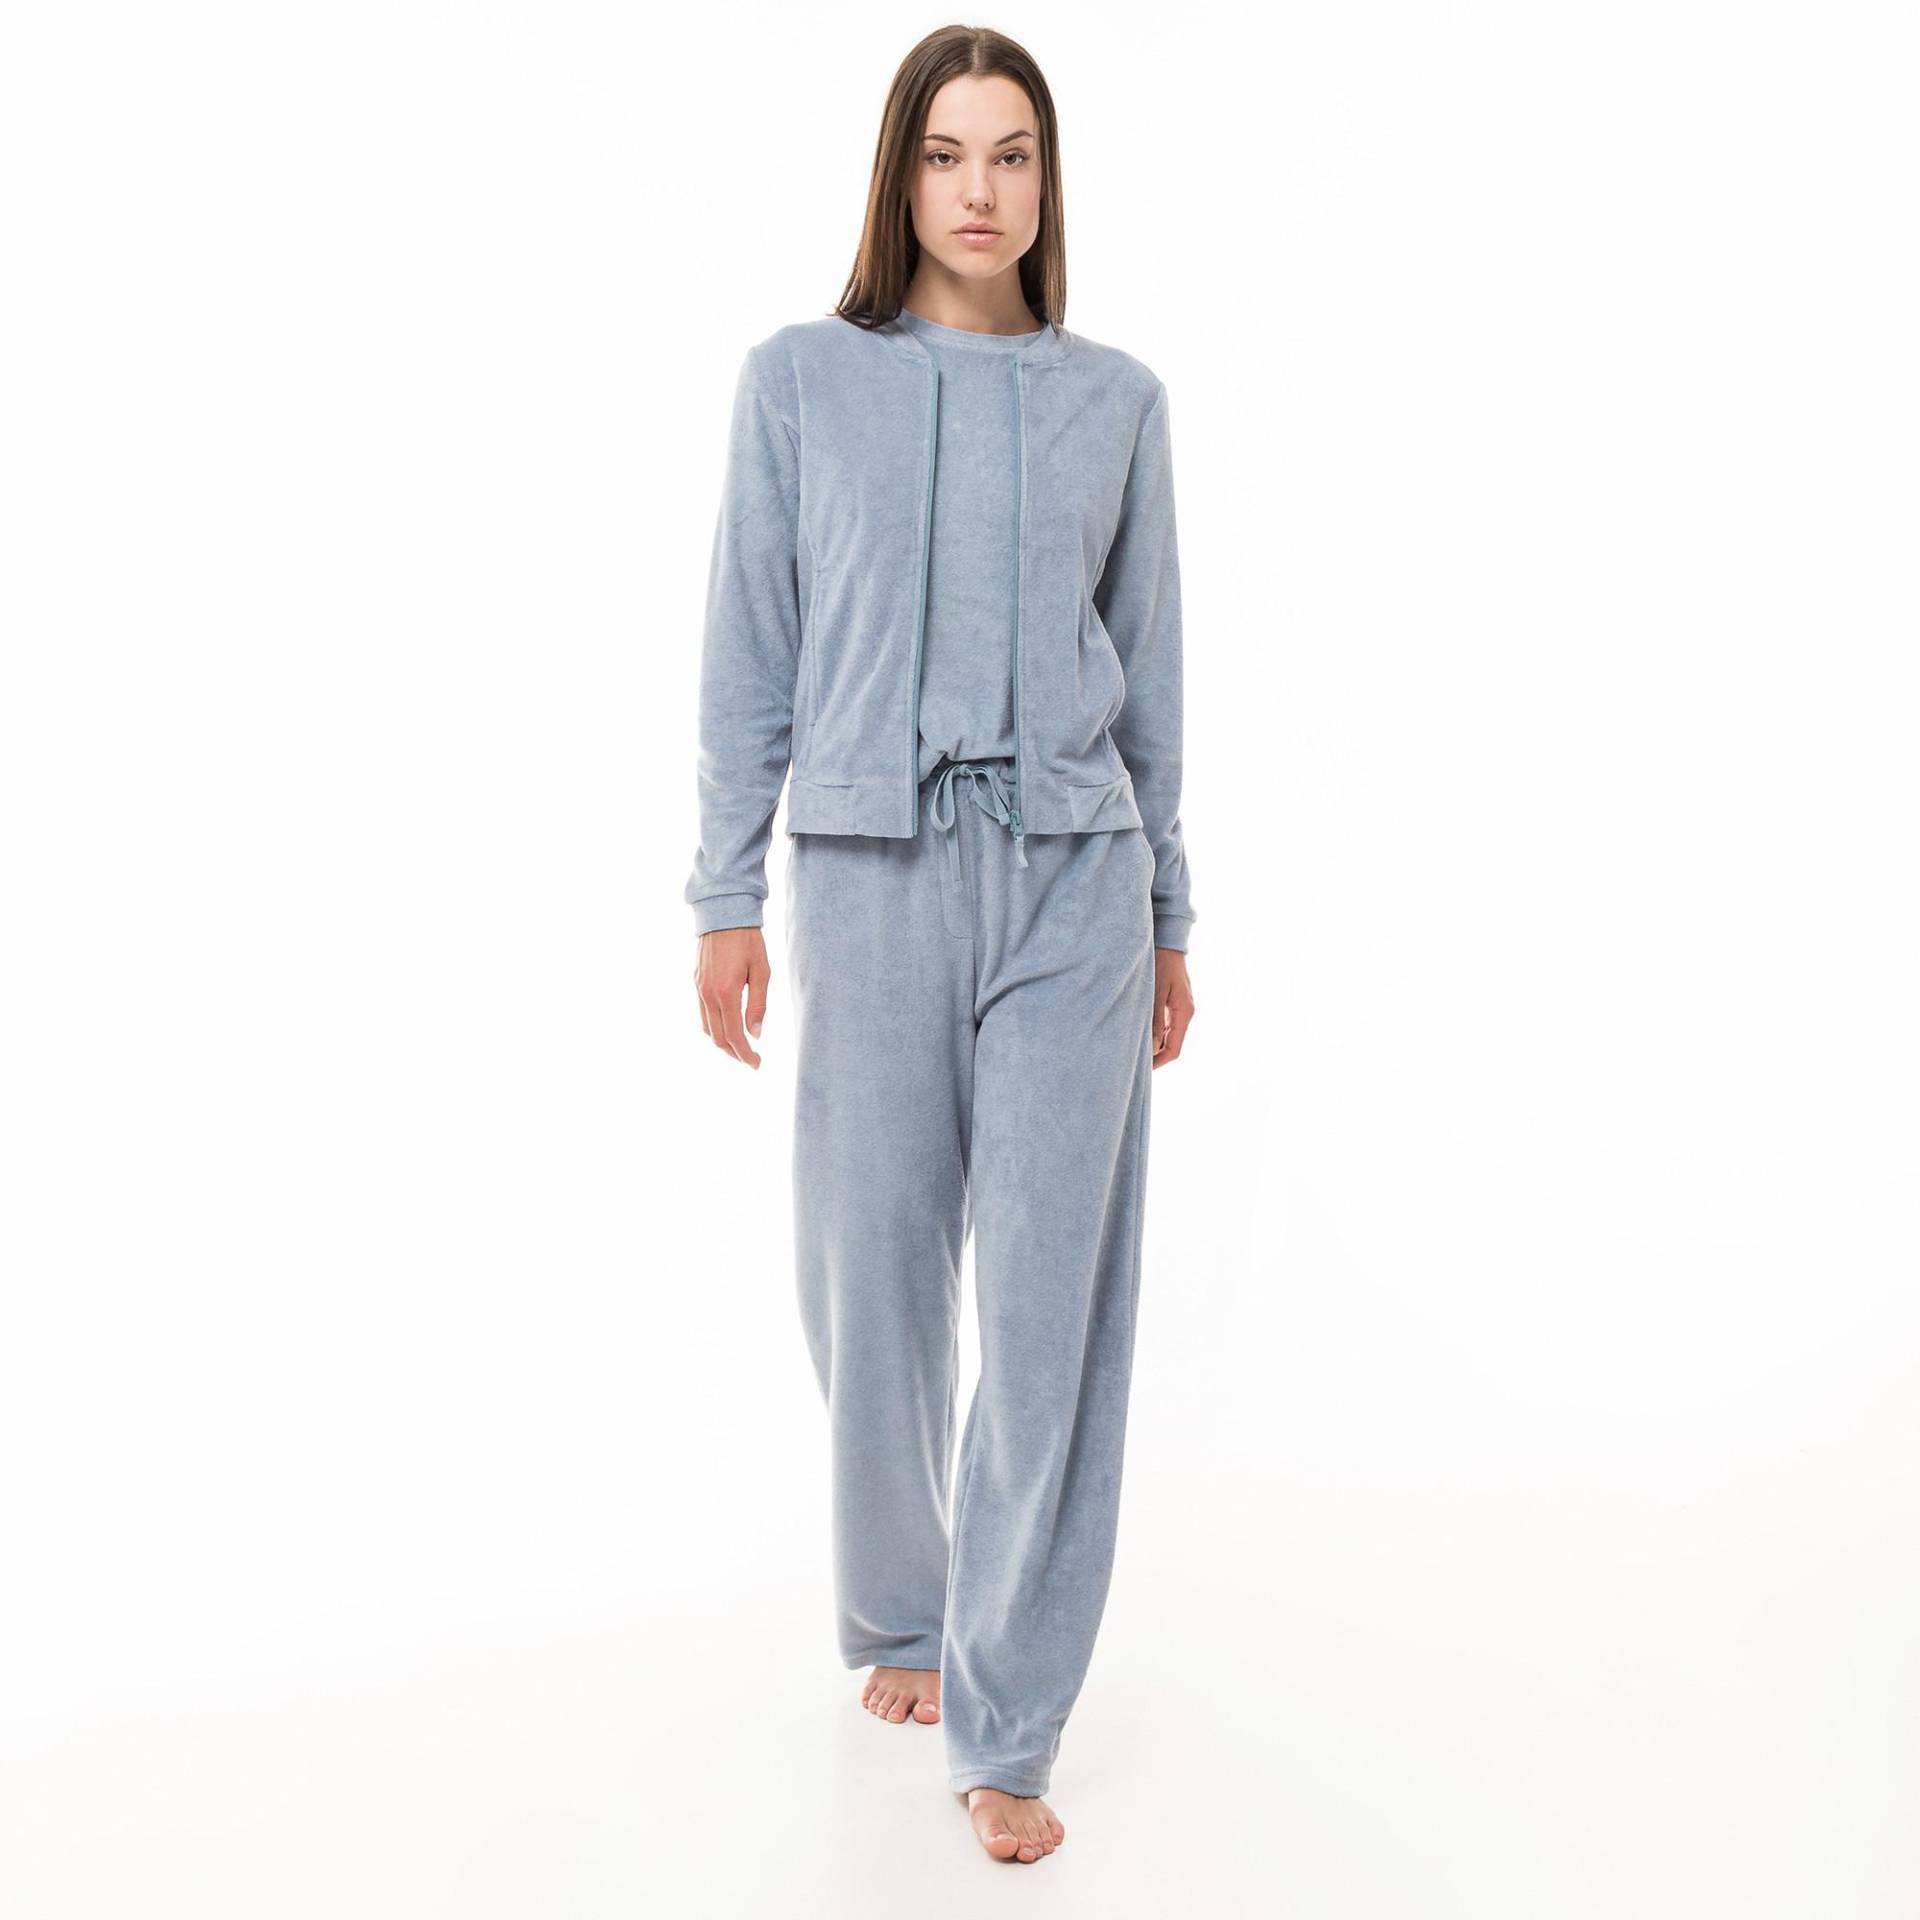 Hose Loungewear Damen Grau-Blau XL von Manor Woman